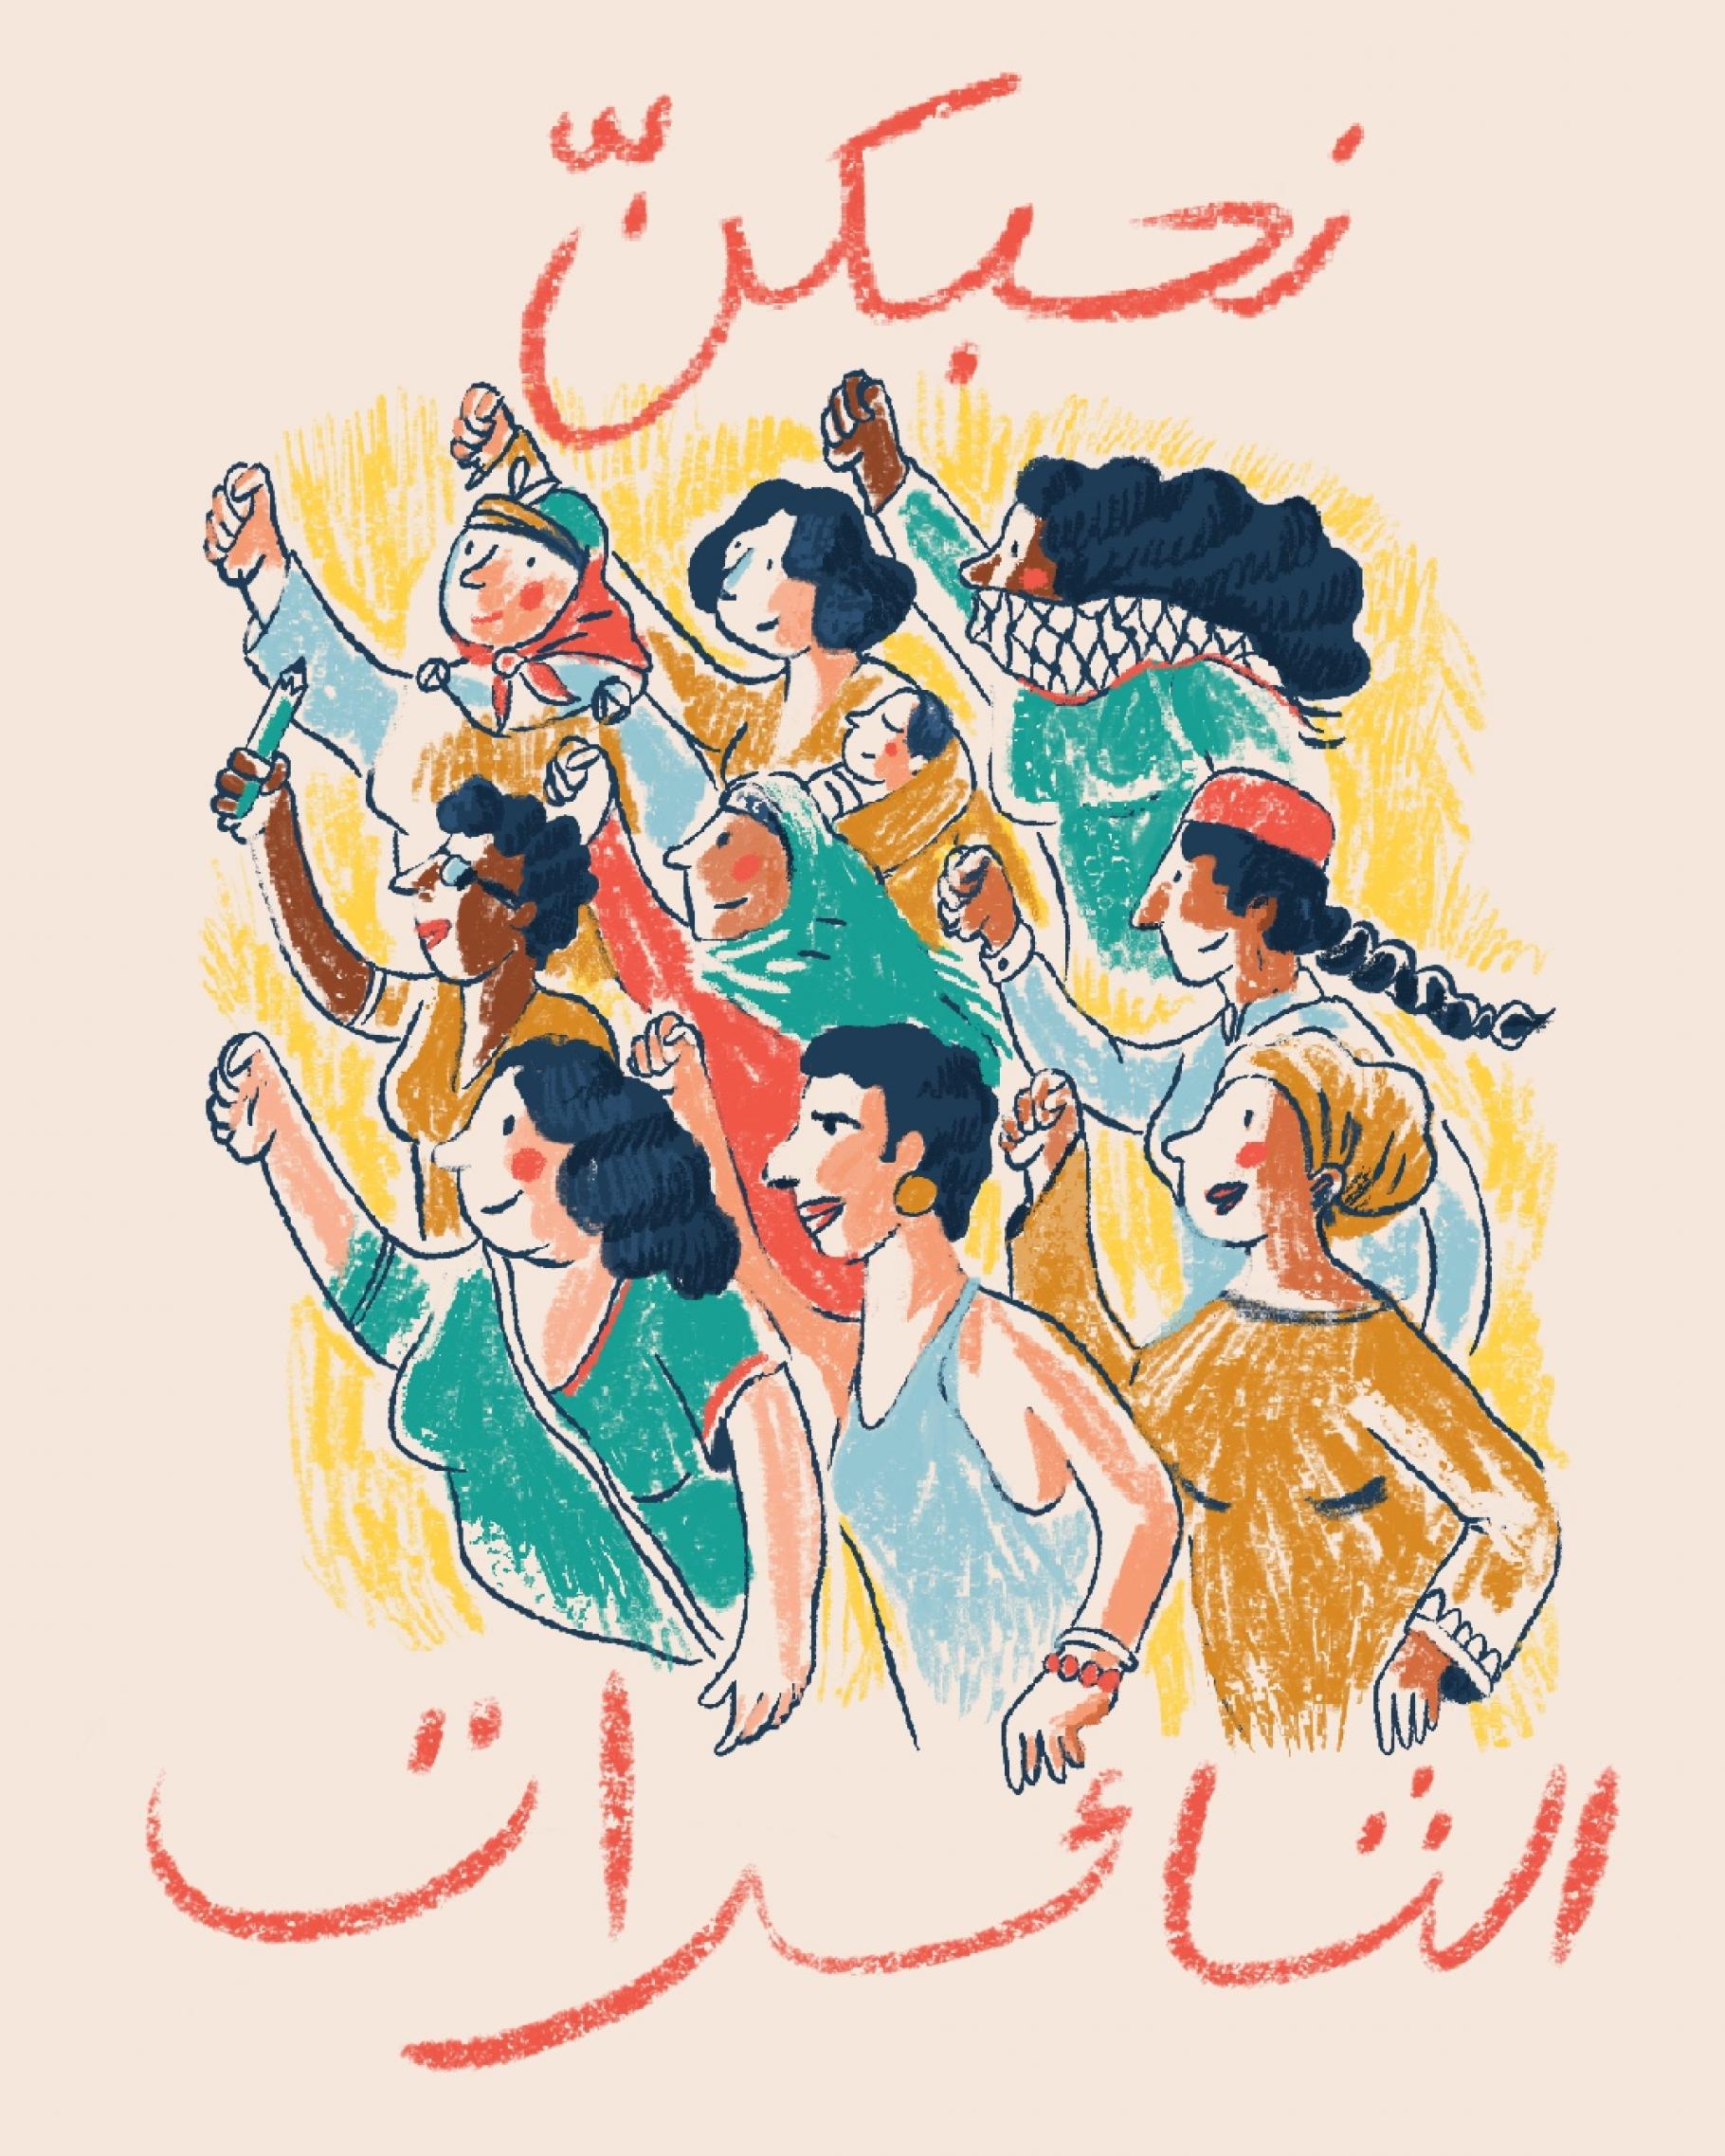 Grafik: Seitenansicht von 9 Frauen, die ihre Fäuste in die Luft strecken. Ein arabischer Schriftzug umrahmt sie: "Wir ehren euch, ihr revolutionären Frauen"